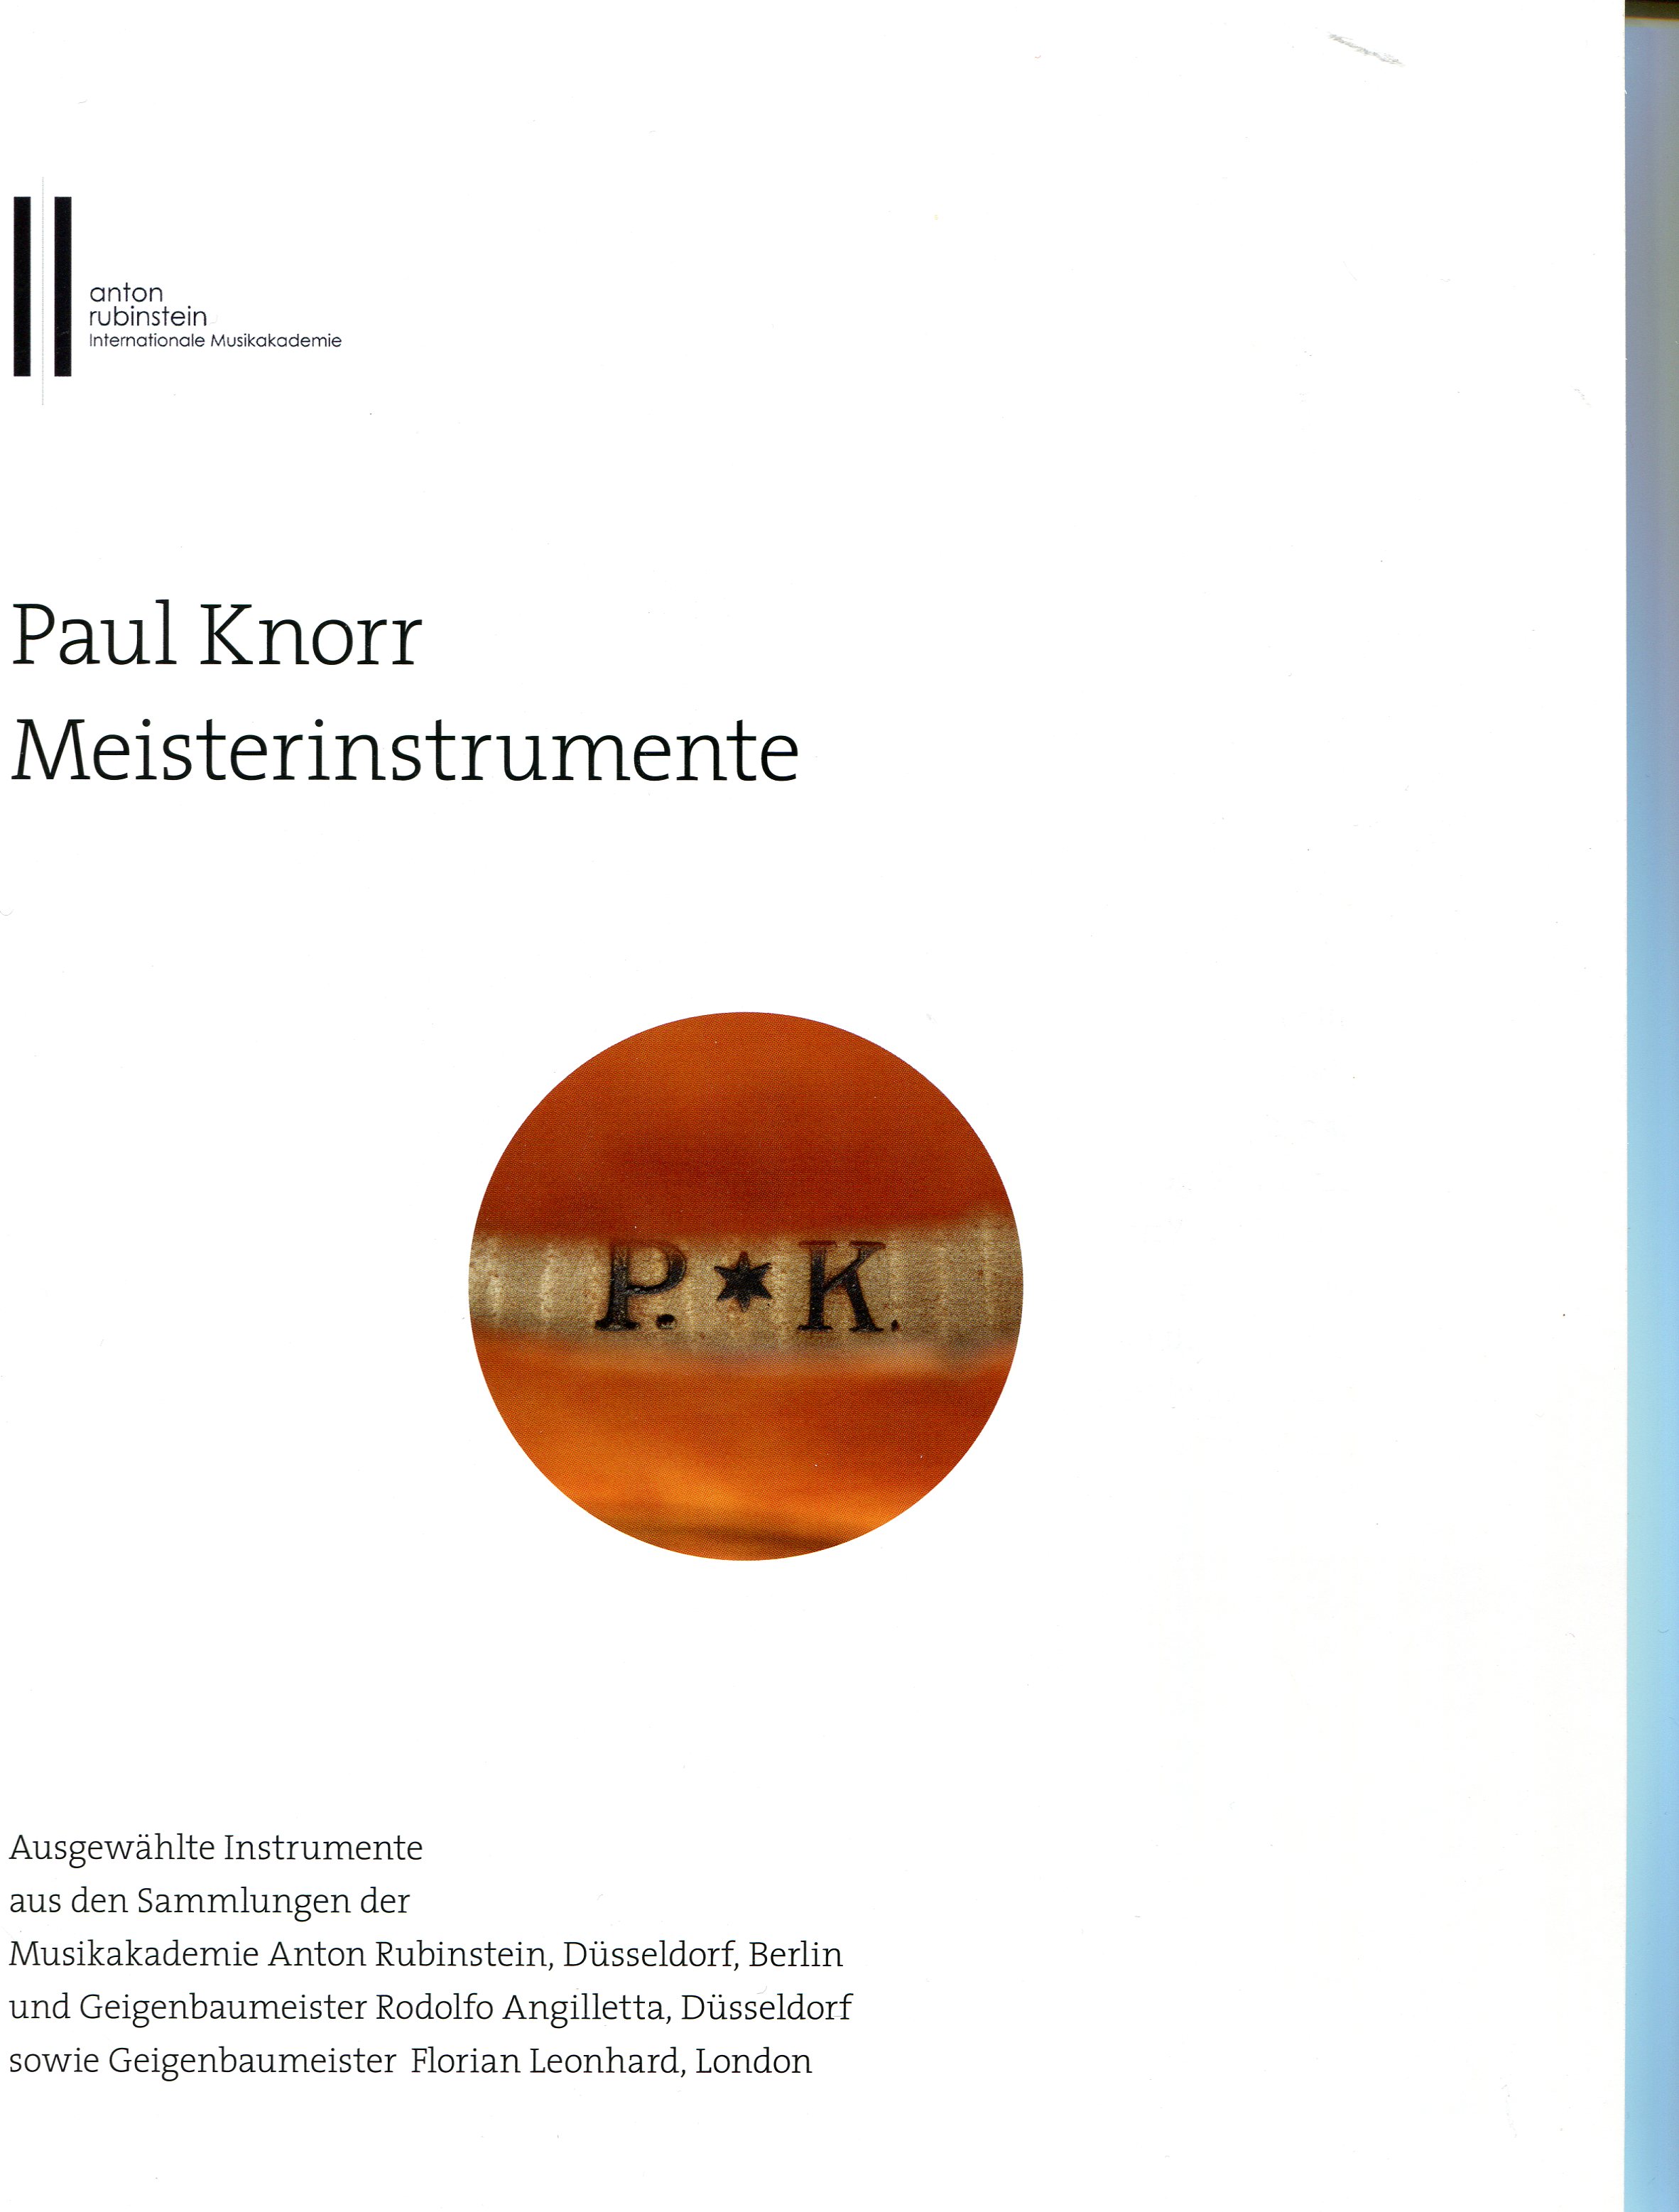 Paul Knorr - Meisterinstrumente Ausstellung Düsseldorf 2018